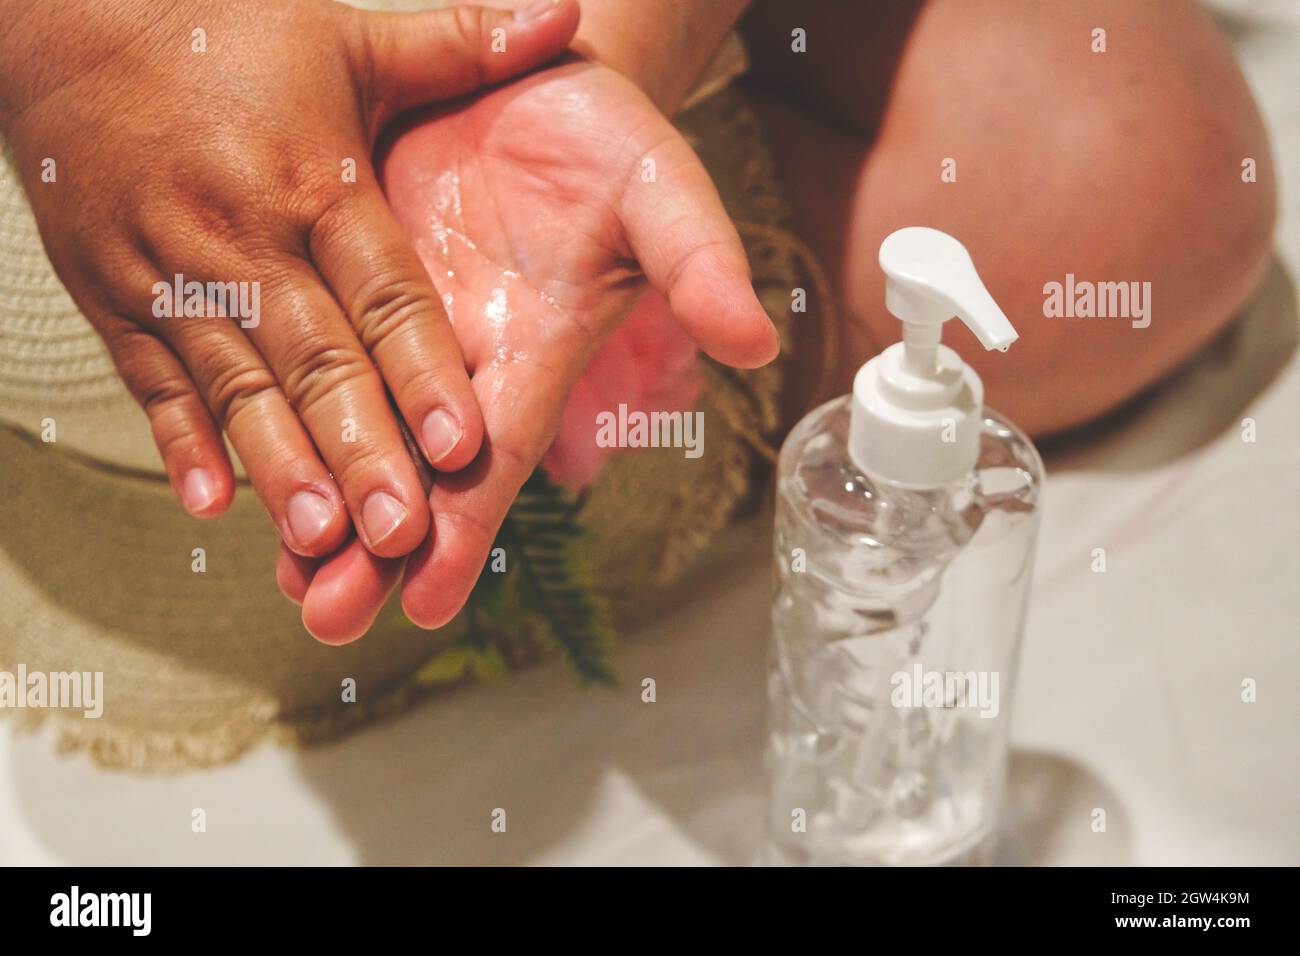 Une femme utilisant Un désinfectant pour les mains Banque D'Images